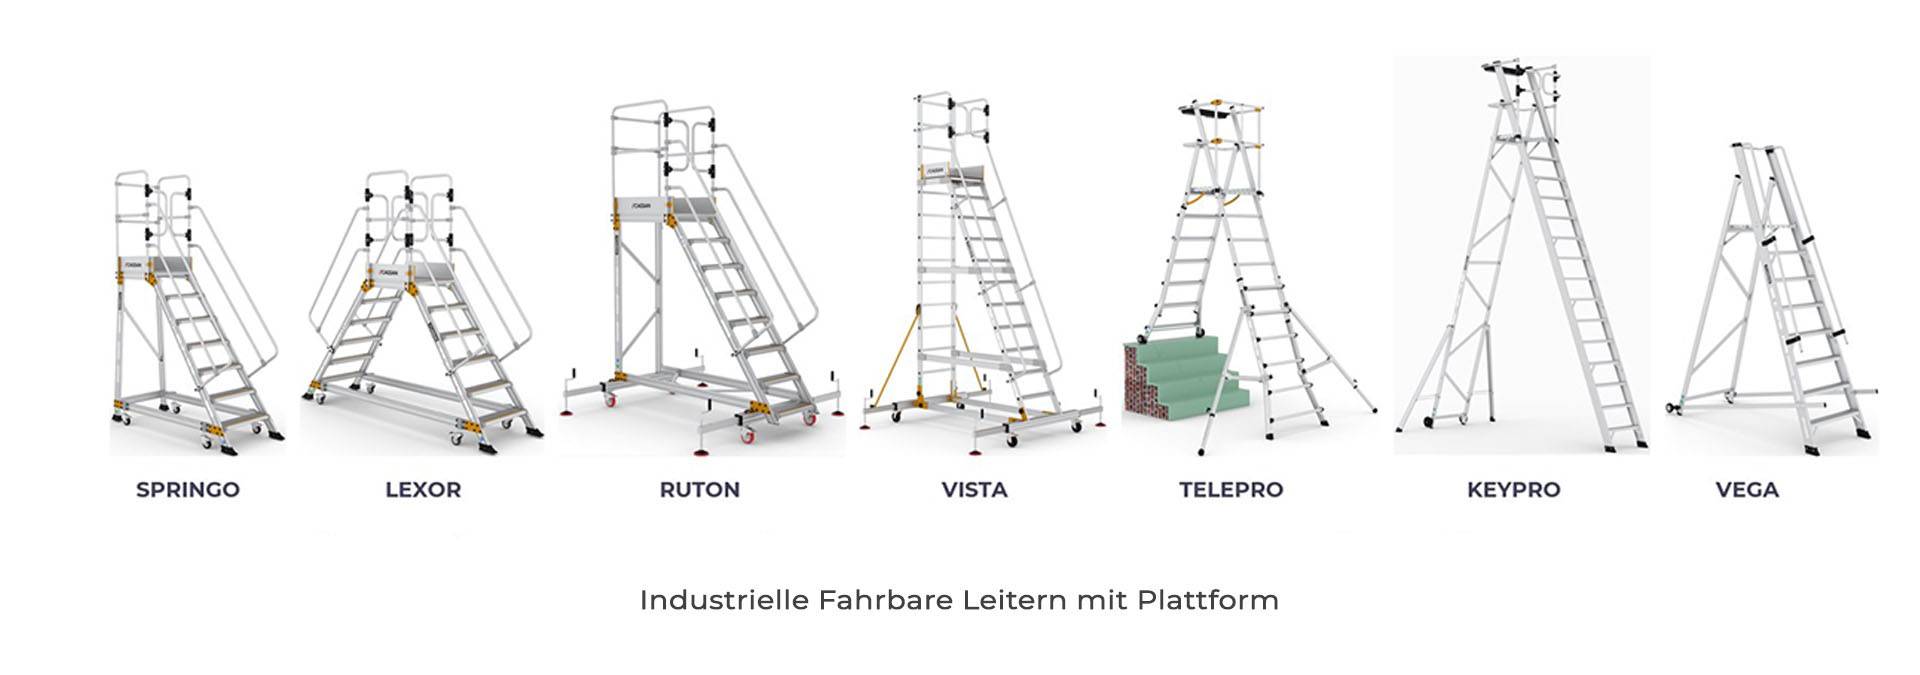 Industrielle Fahrbare Leitern mit Plattform